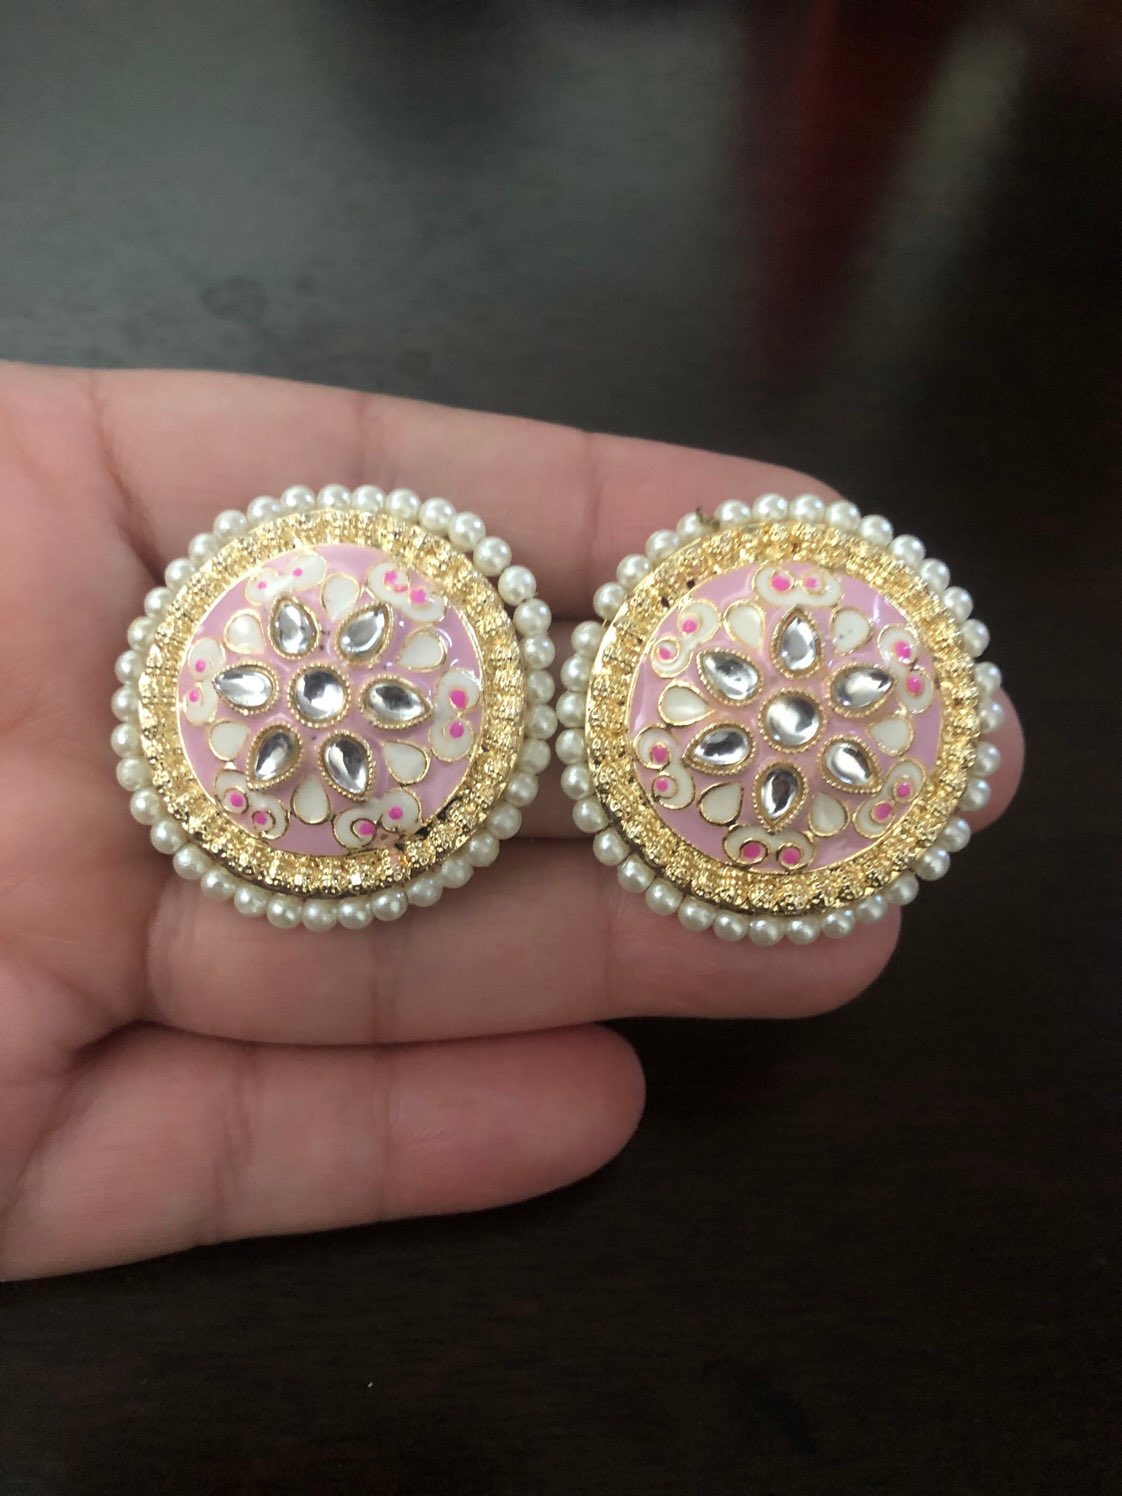 Oxidized Gold Plated Handmade Stud Earrings for Women Indian Jewelry Party  Wear Stud Screw Back Earrings - Etsy | Stud earrings, Etsy earrings, Online  earrings